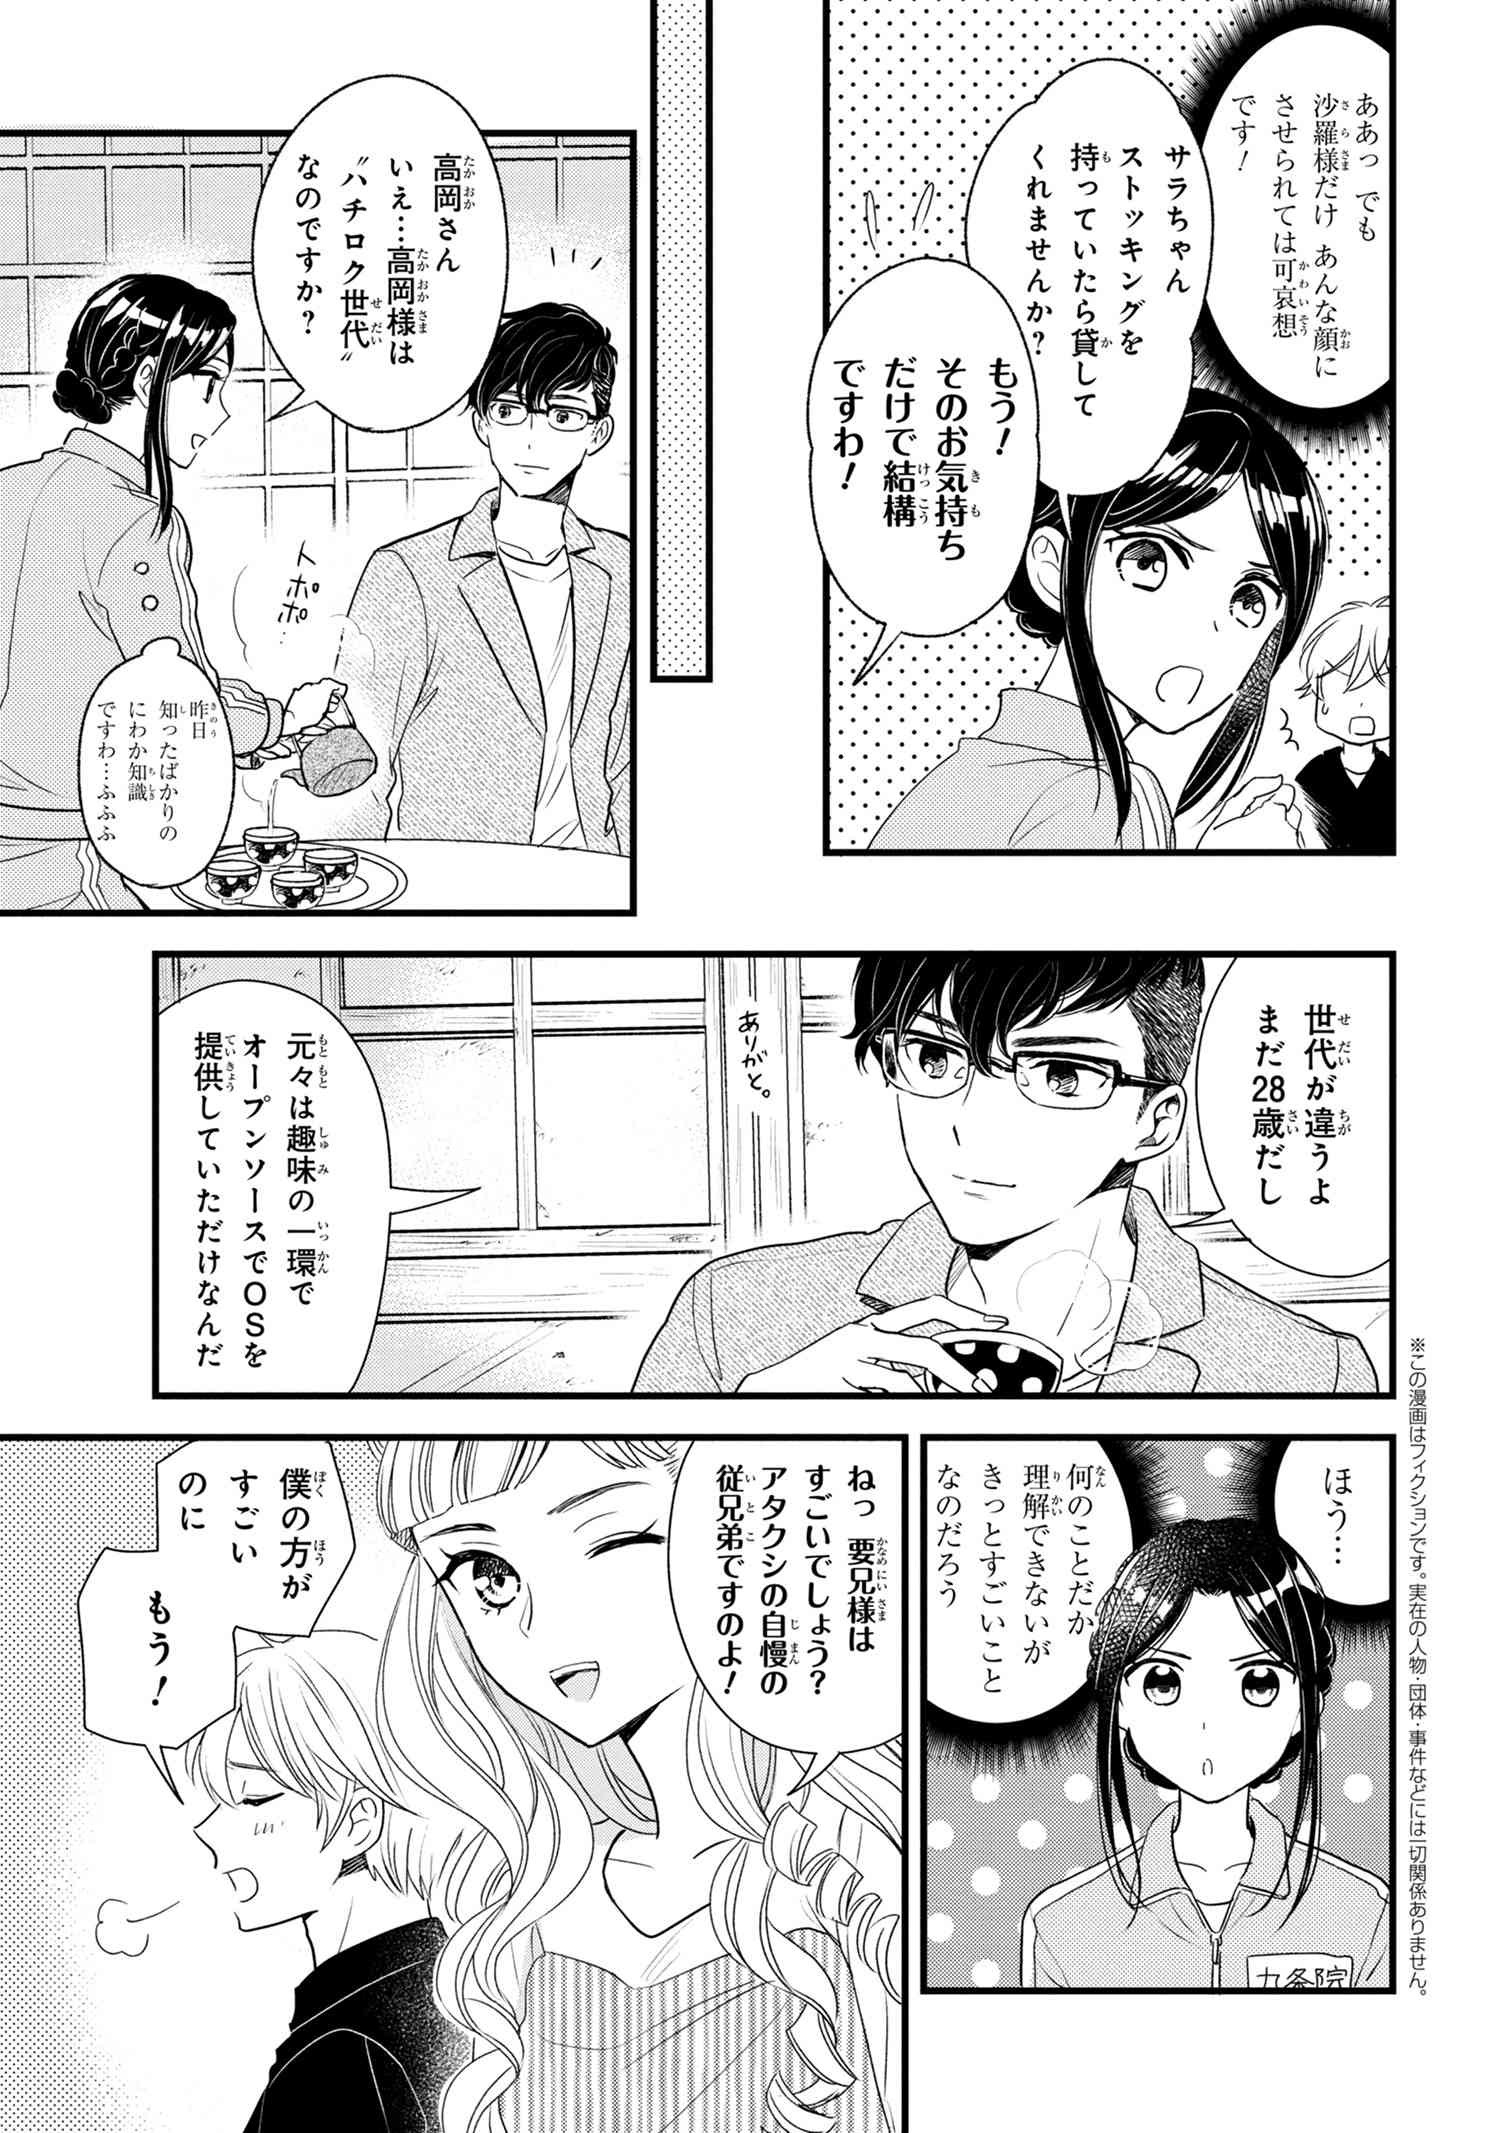 Reiko no Fuugi Akuyaku Reijou to Yobarete imasu ga, tada no Binbou Musume desu - Chapter 6-6 - Page 2